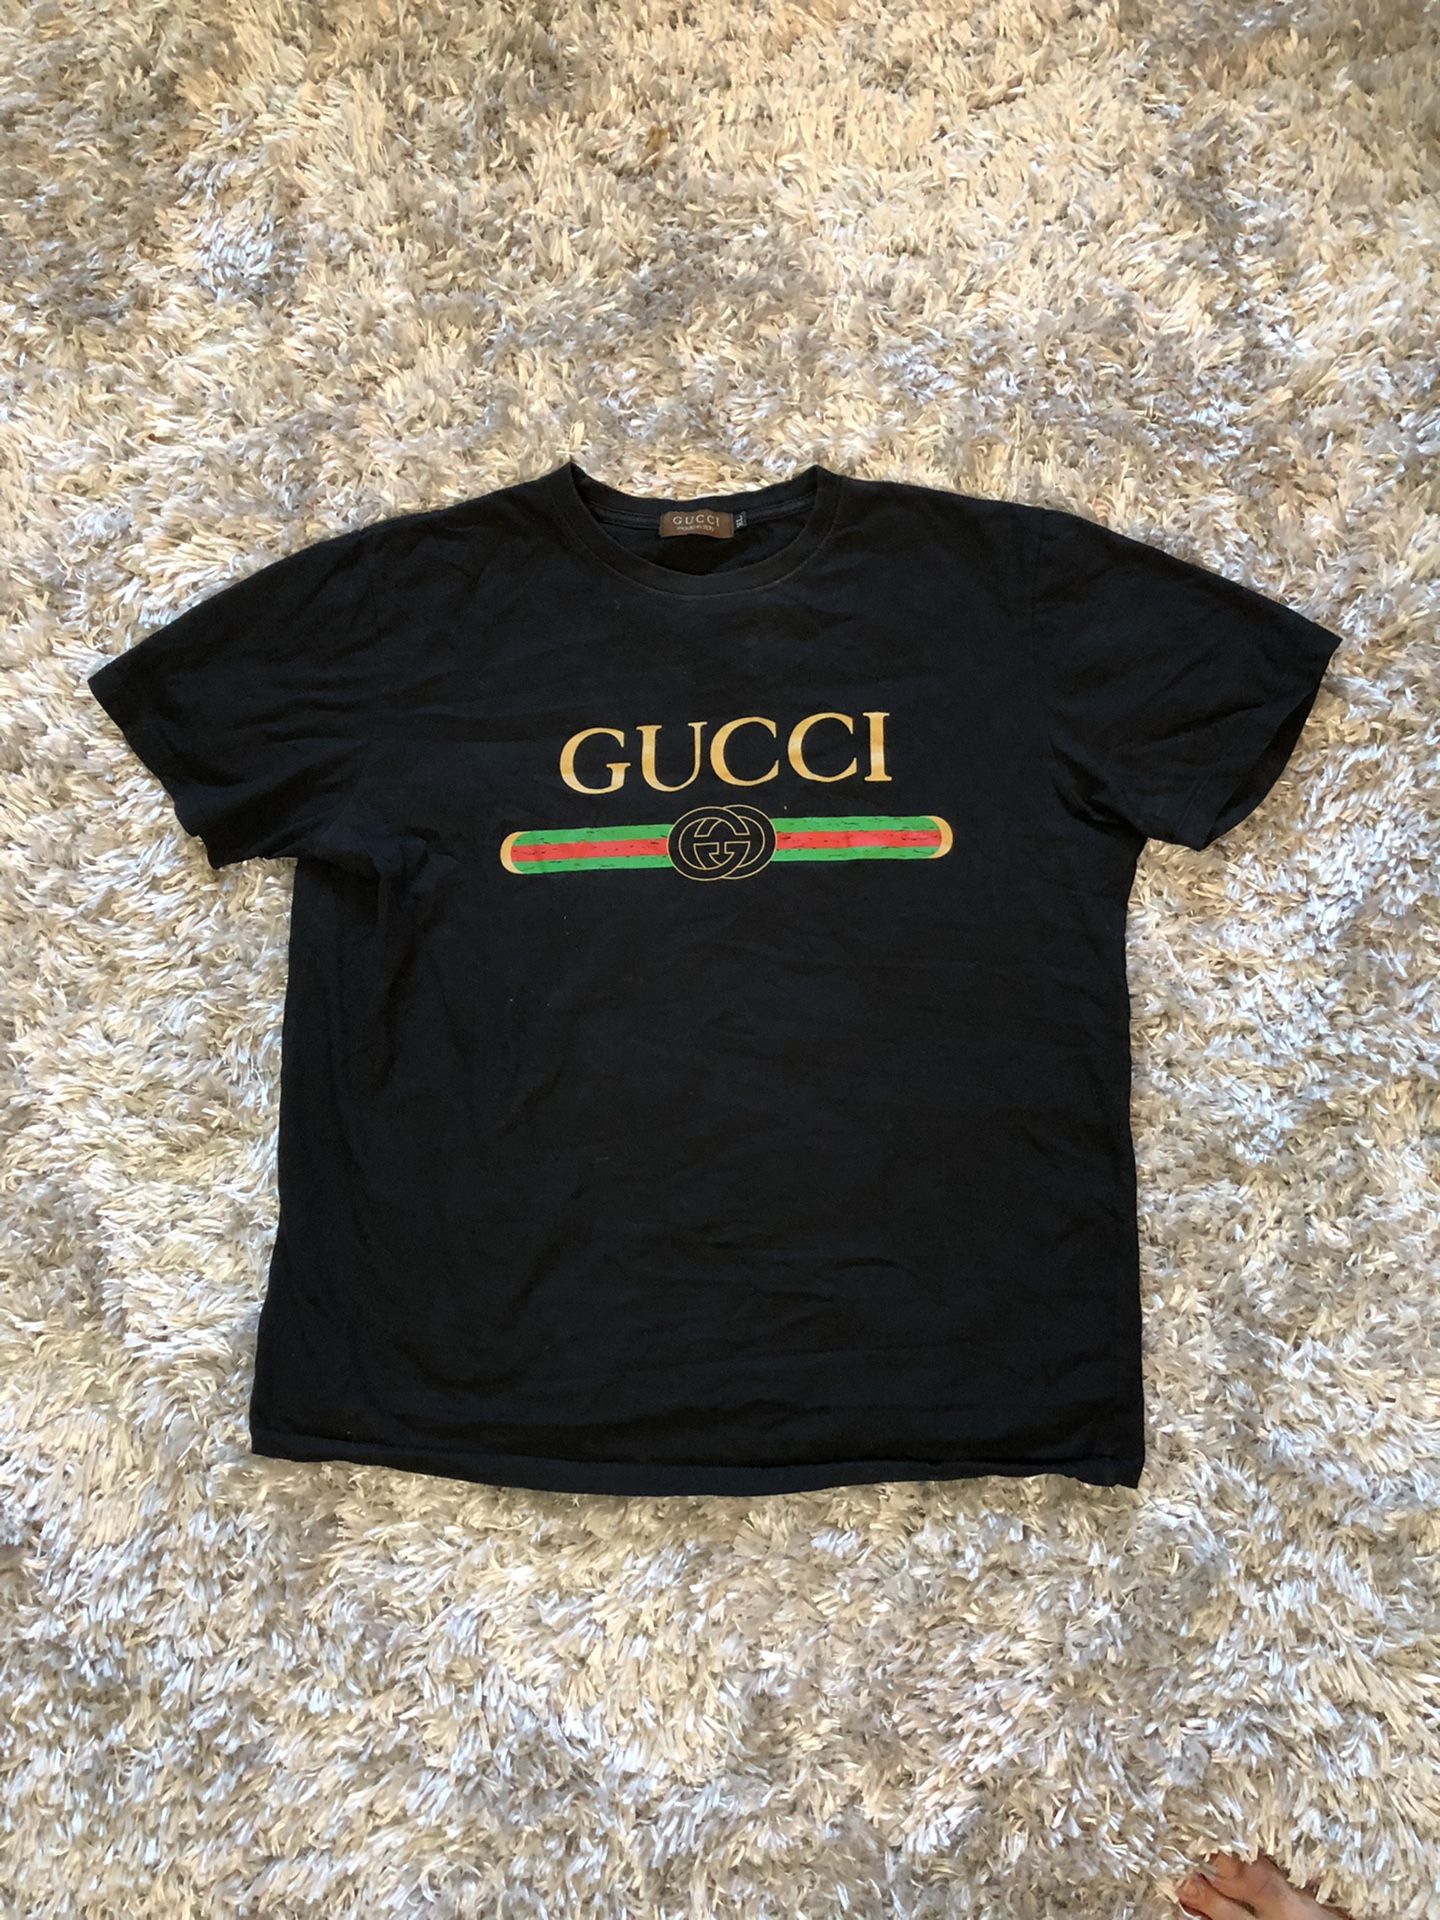 Gucci Shirt Xl (fits Like Large)